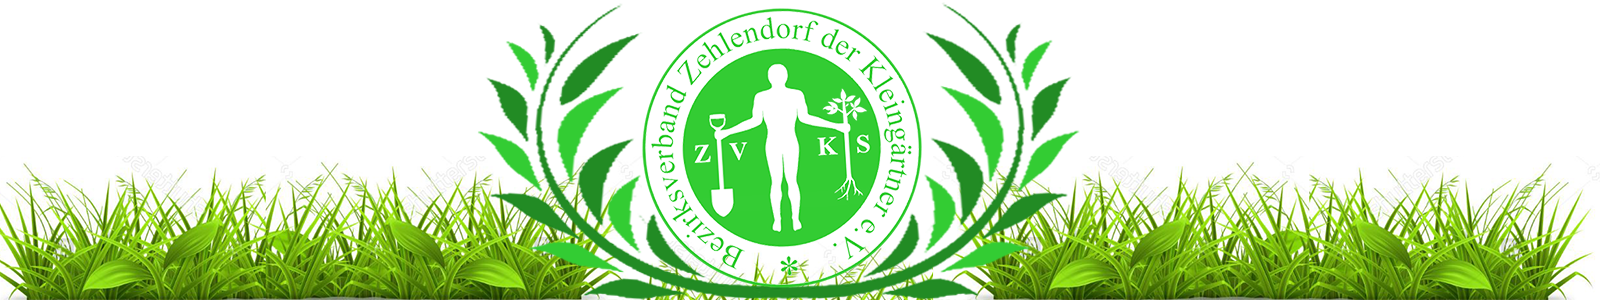 Bezirksverband Zehlendorf der Kleingärtner e.V.